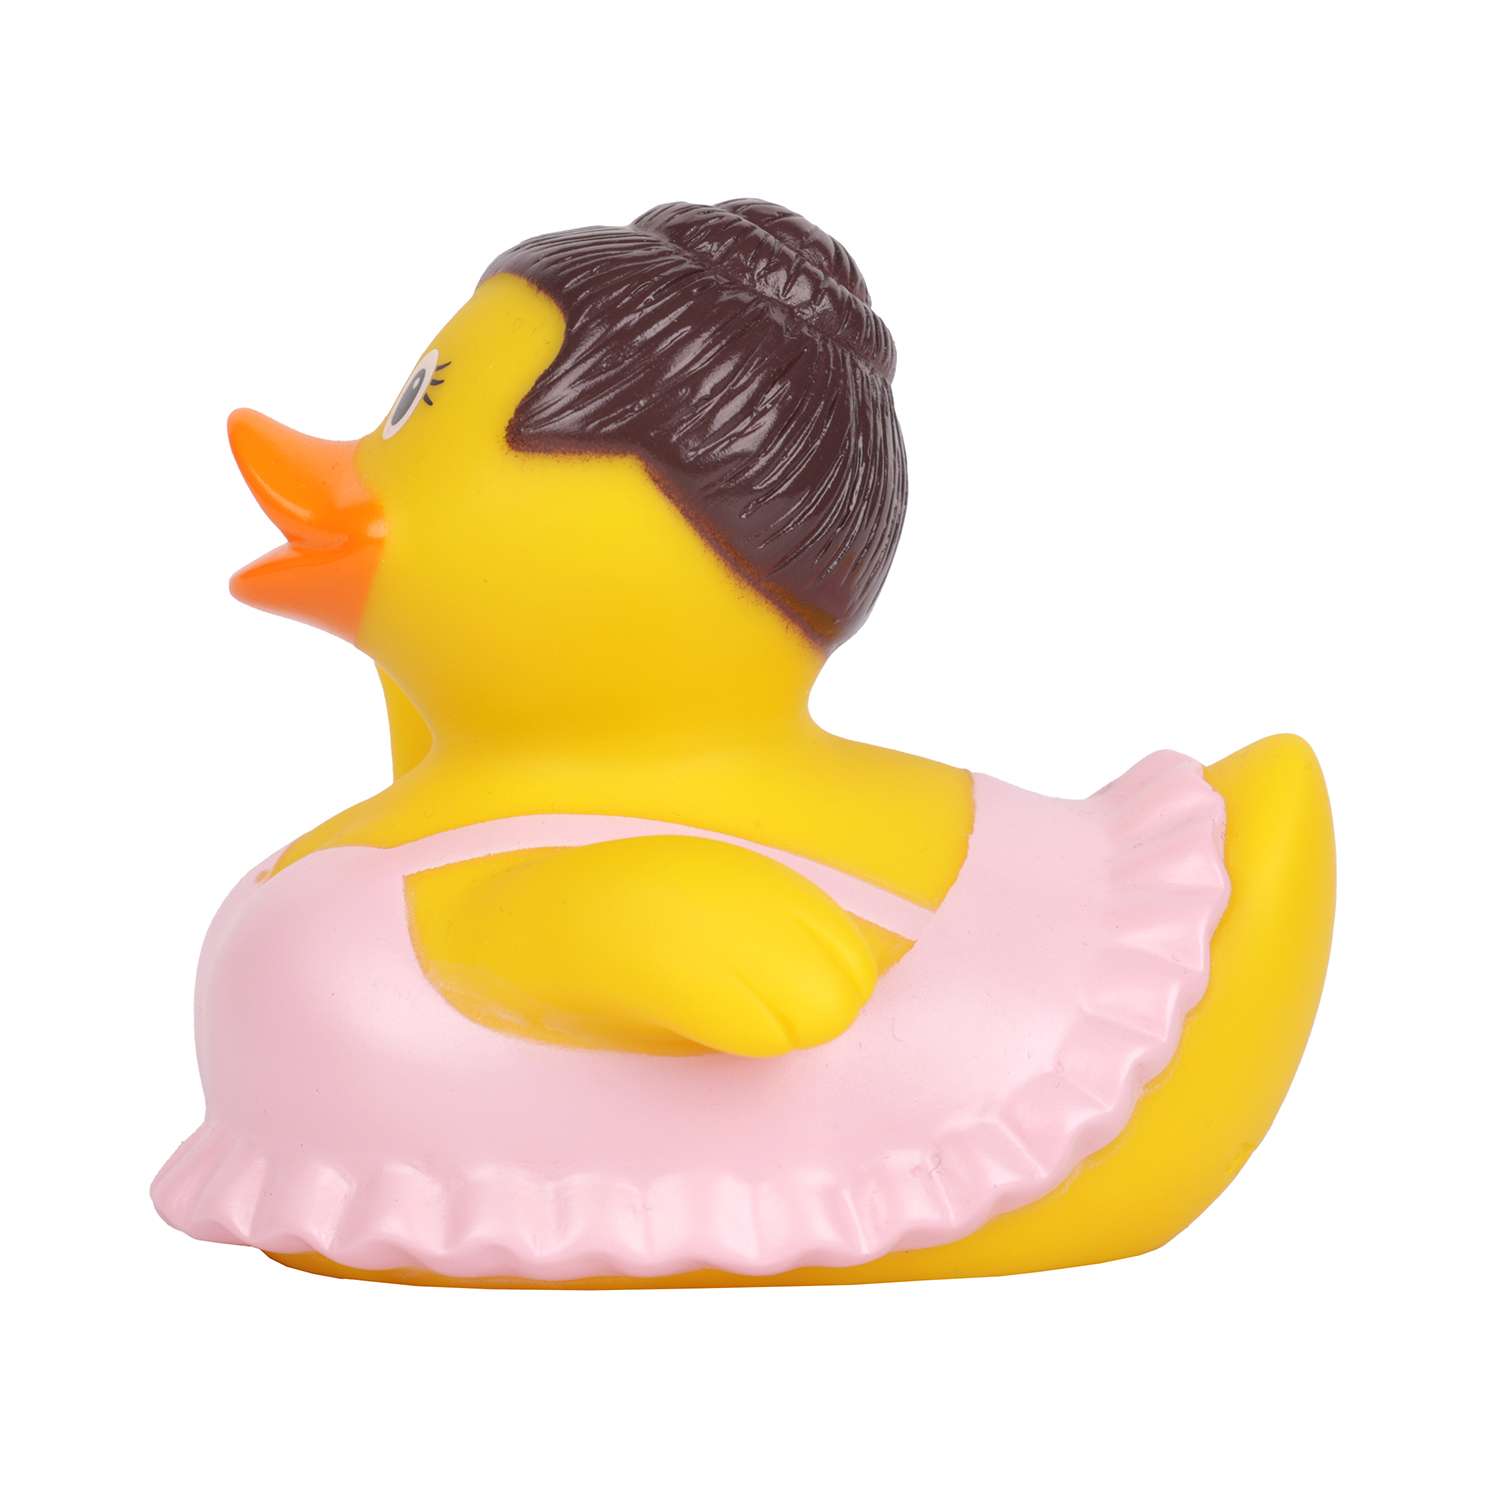 Игрушка для ванны сувенир Funny ducks Балерина уточка 1311 - фото 4